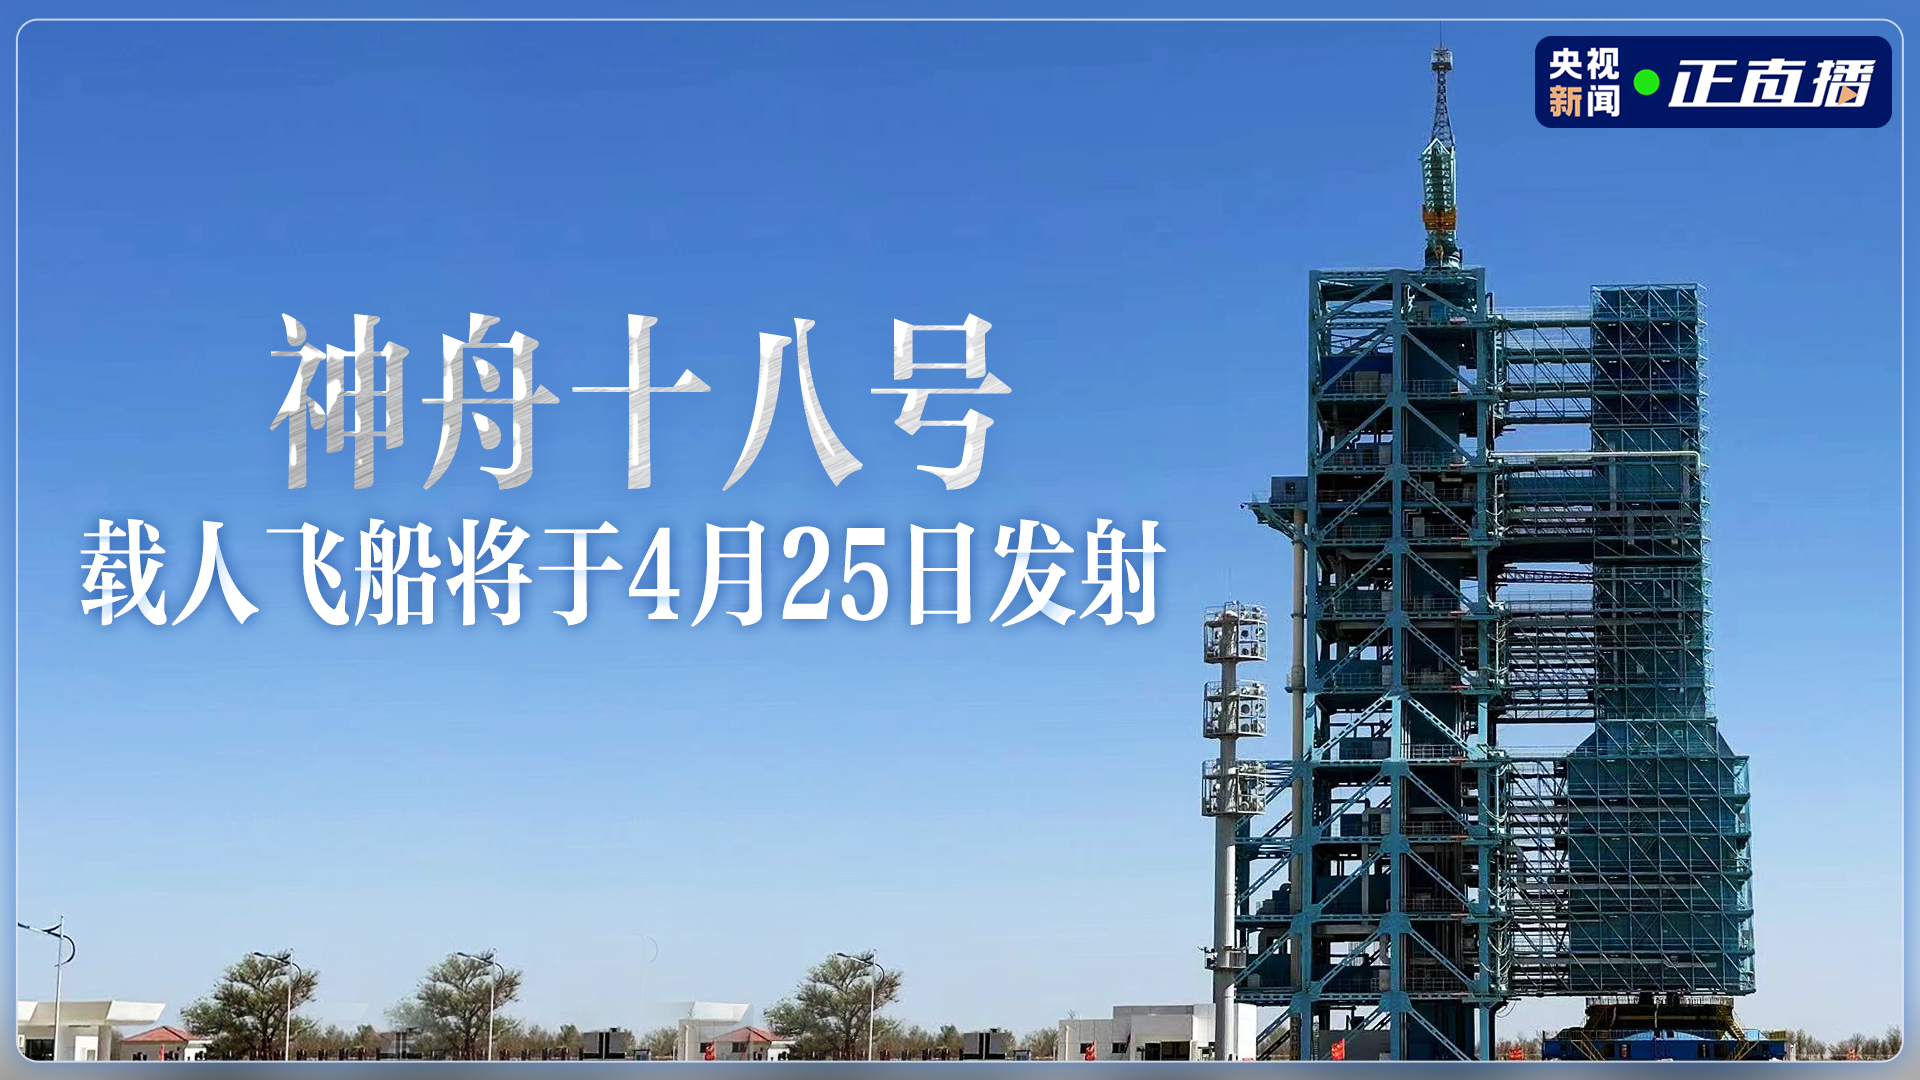 神舟十八号载人飞船将于4月25日发射